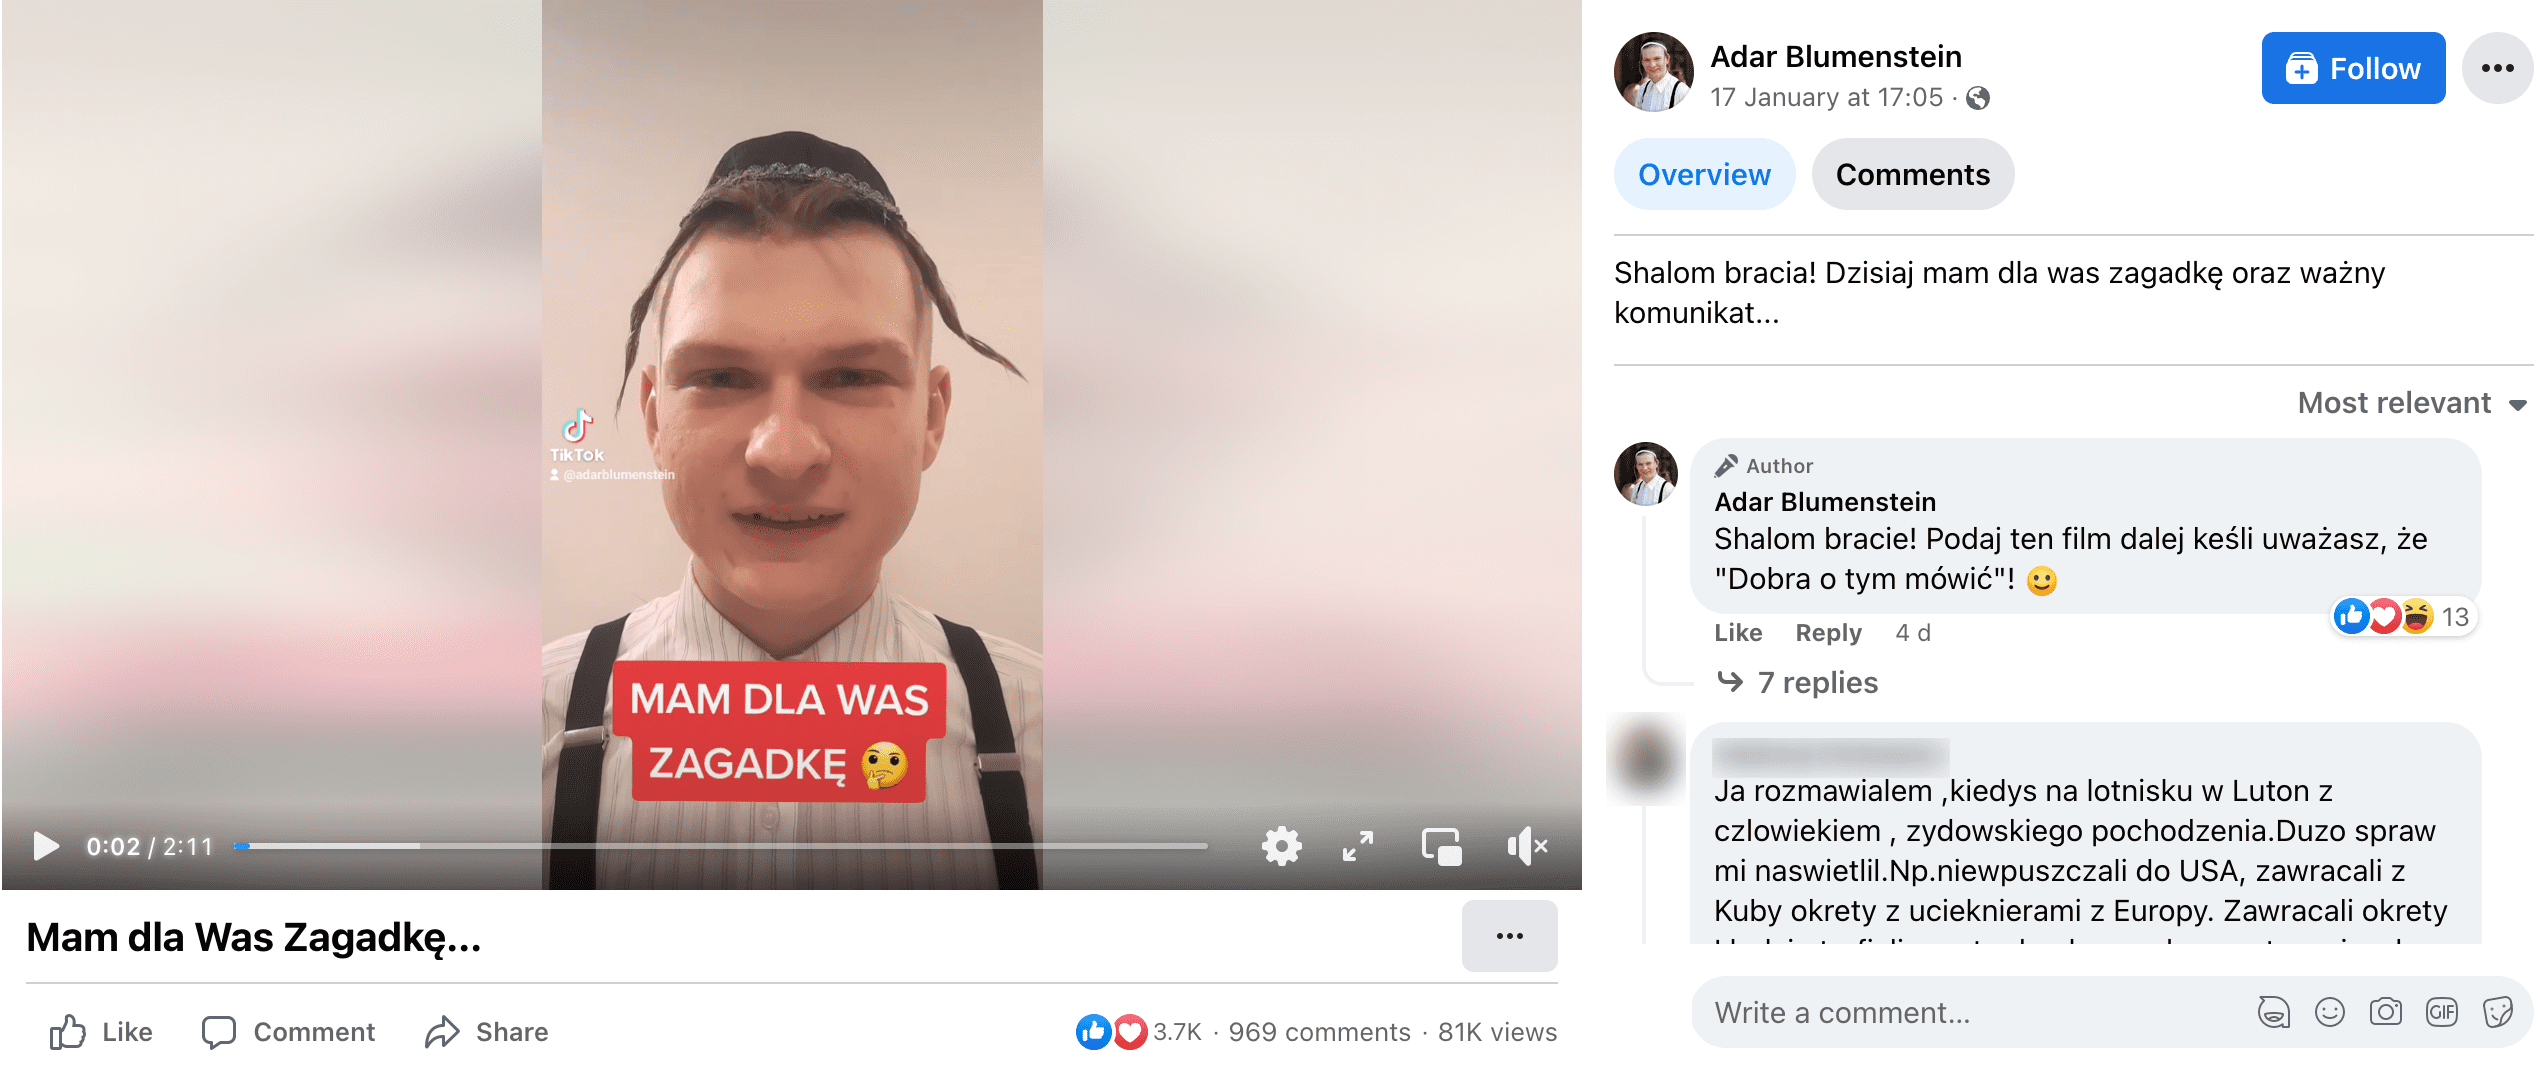 Zrzut ekranu posta na Facebooku. Na nagraniu młody mężczyzna ubrany w strój mający przypominać wygląd ortodoksyjnego Żyda. W komentarzu autor prosi udostępnienia.